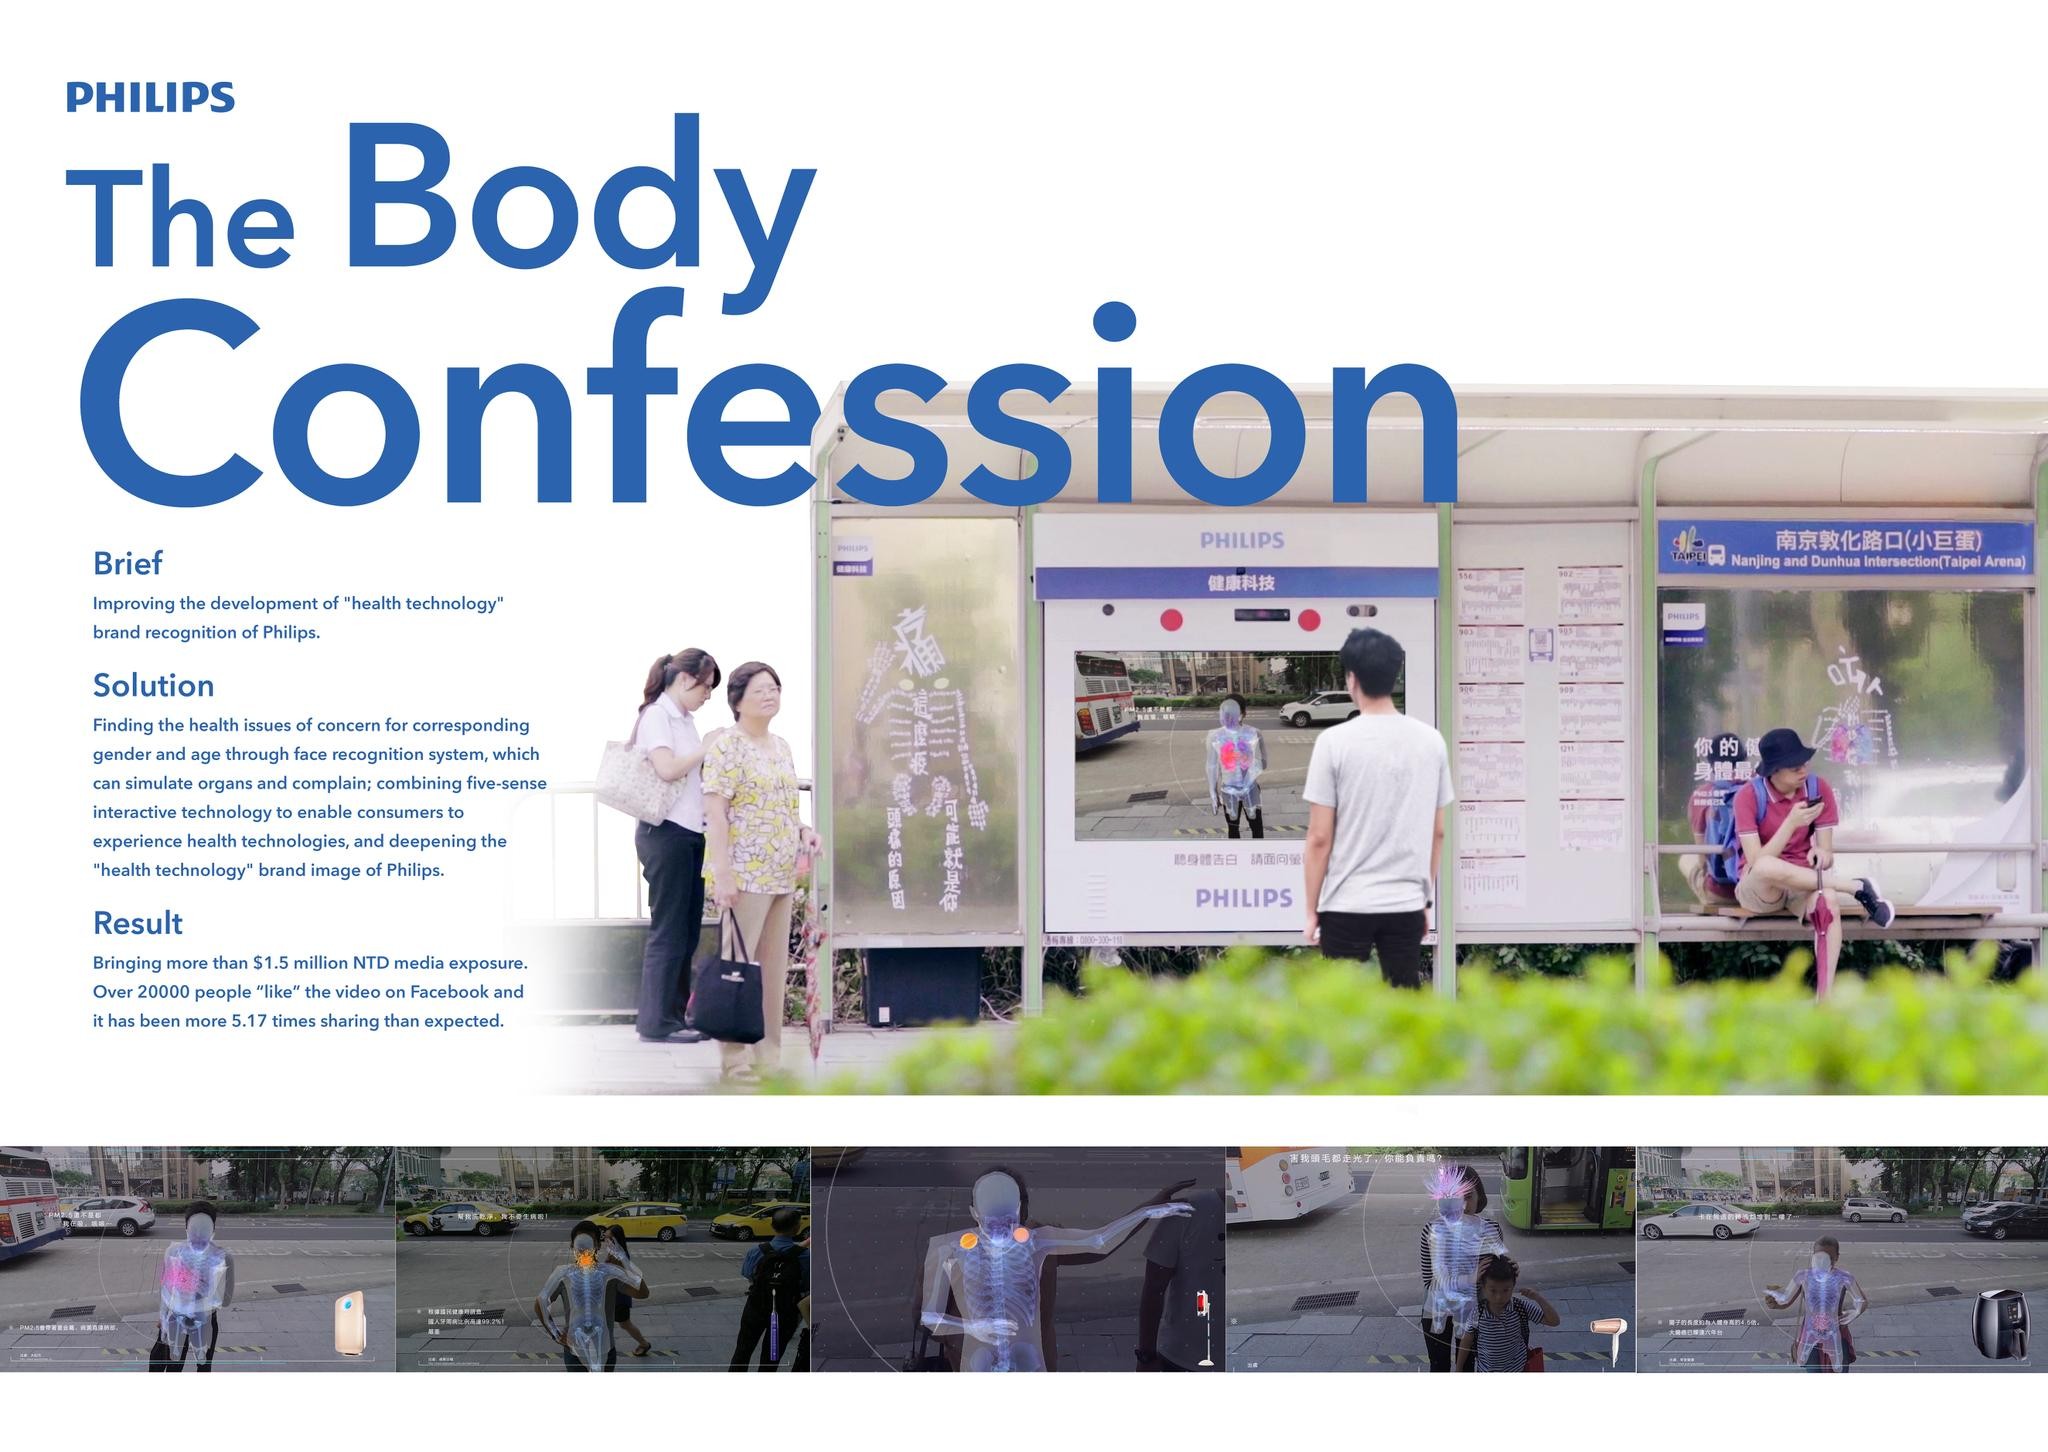 Body confession